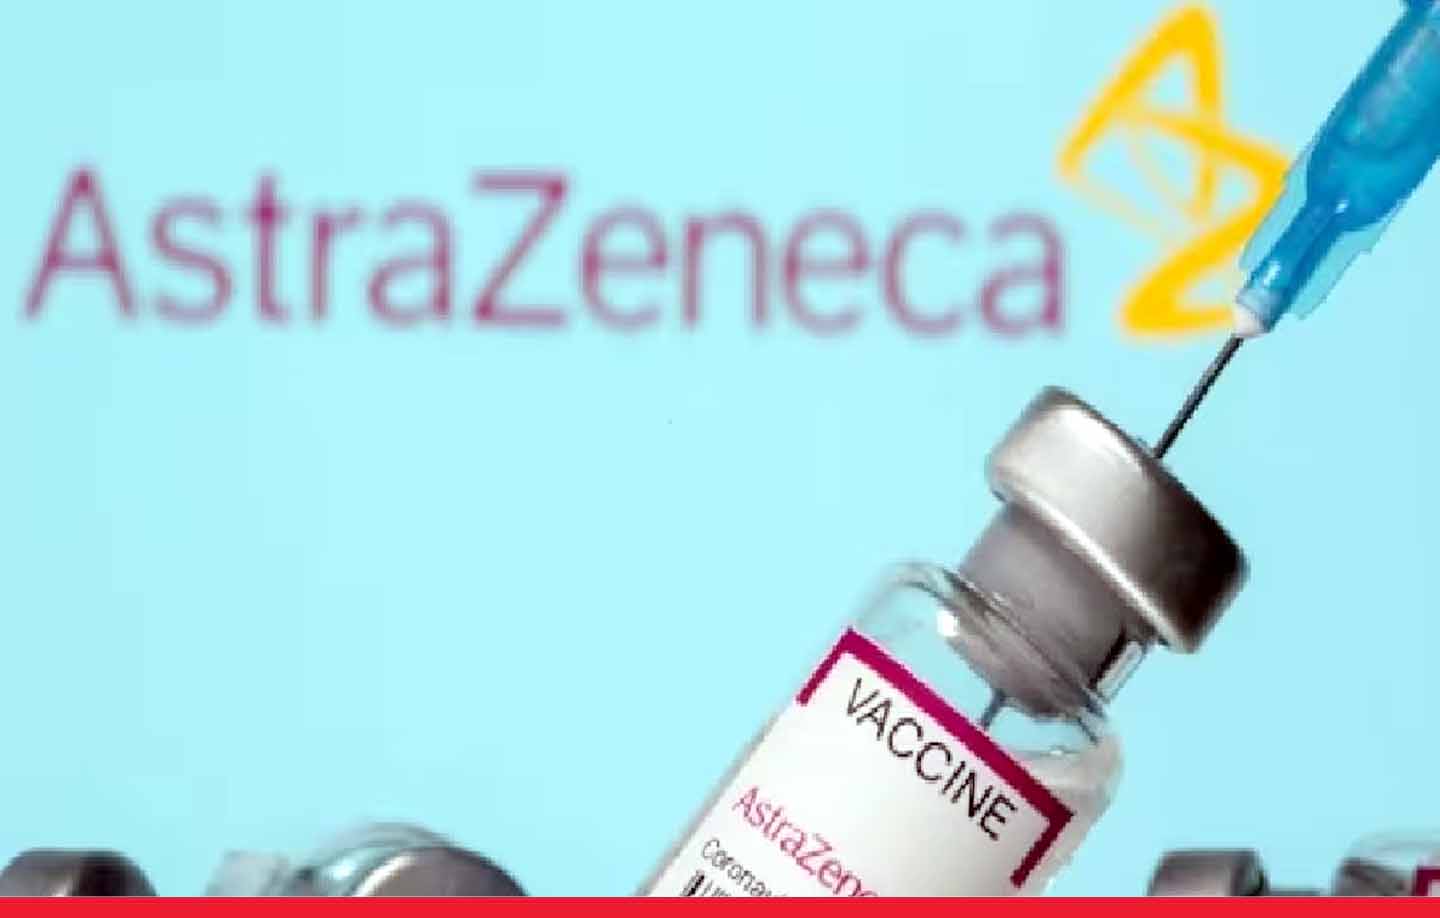 एस्ट्राजेनेका कंपनी का बड़ा फैसला: वापस लेगी कोविड वैक्सीन, साइड इफैक्ट को लेकर मचा बवाल